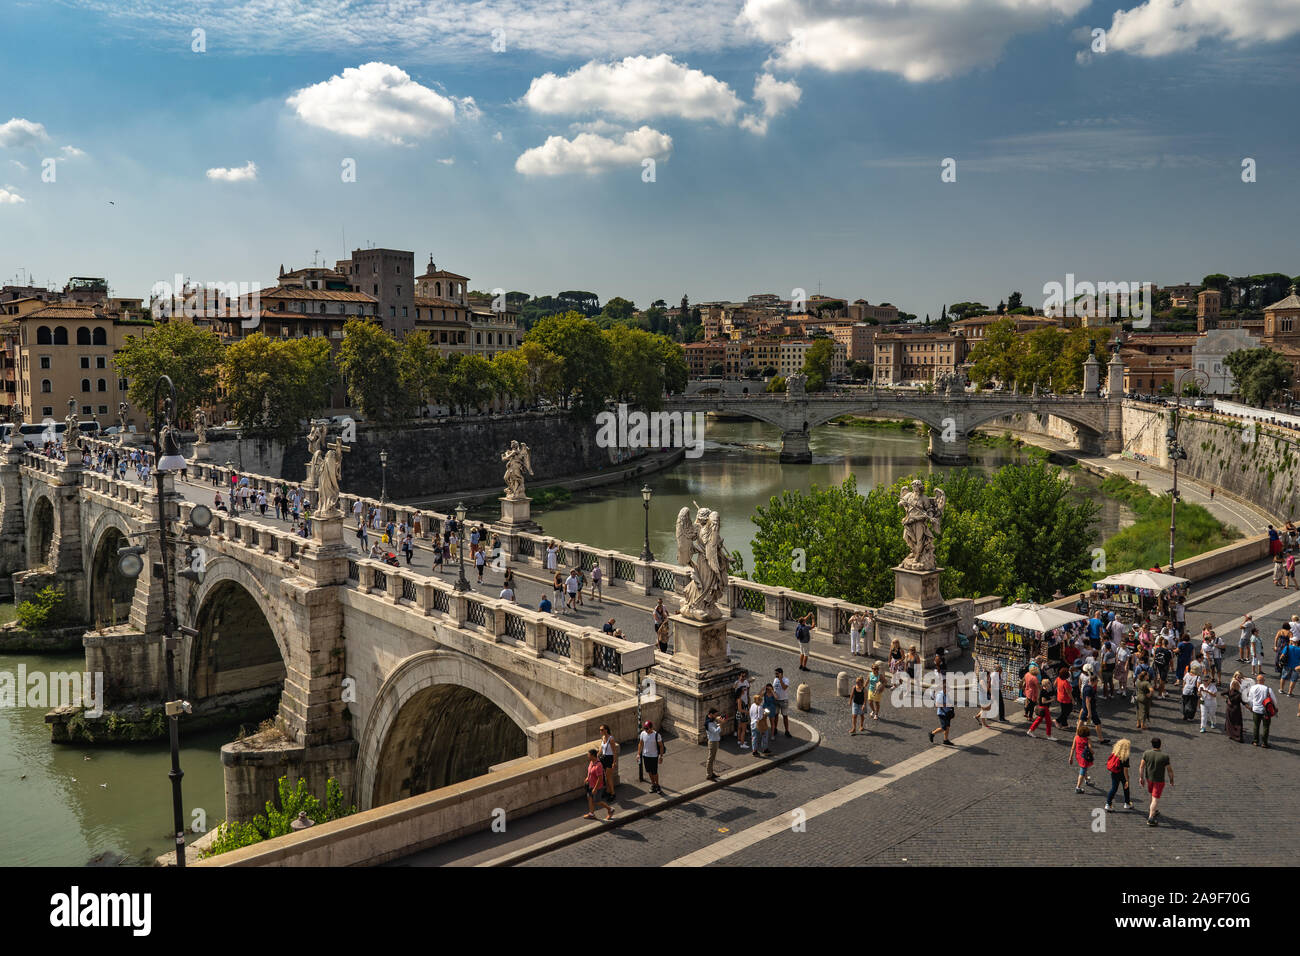 Bella vista da Castel Sant'Angelo sul ponte, gente camminare su di esso e il fiume Tevere. Una bella giornata di sole a Roma, fairytale simile a. Foto Stock